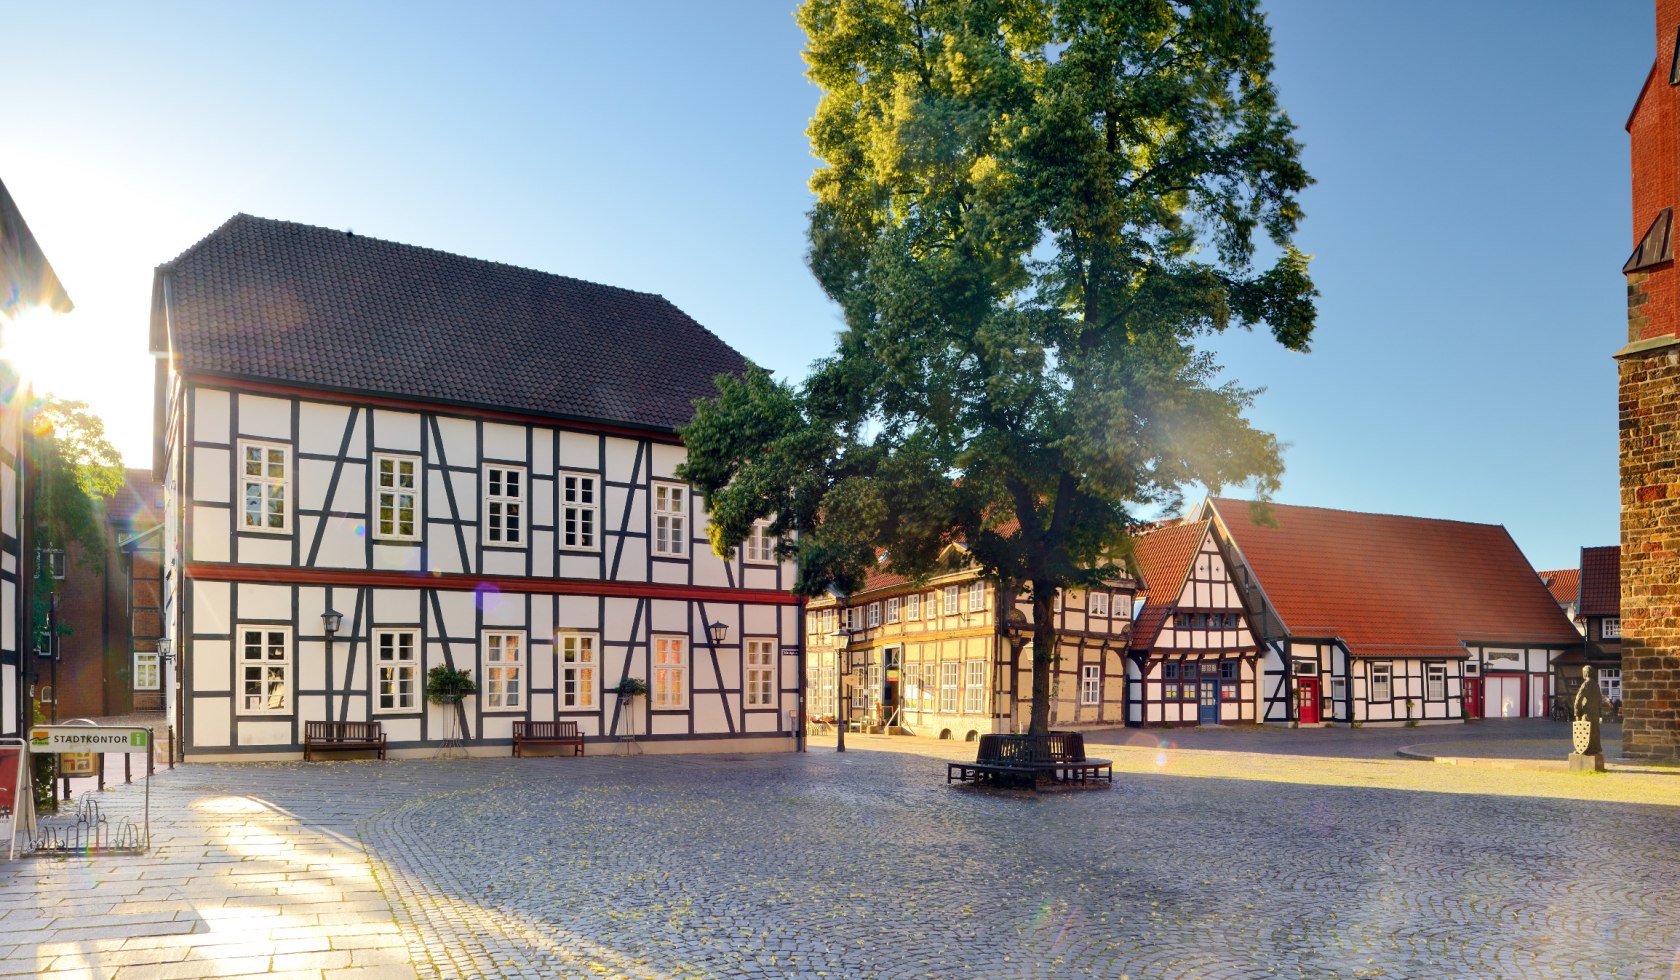 Marktplaats in Nienburg met vakwerkhuizen, © DZT/Carovillano